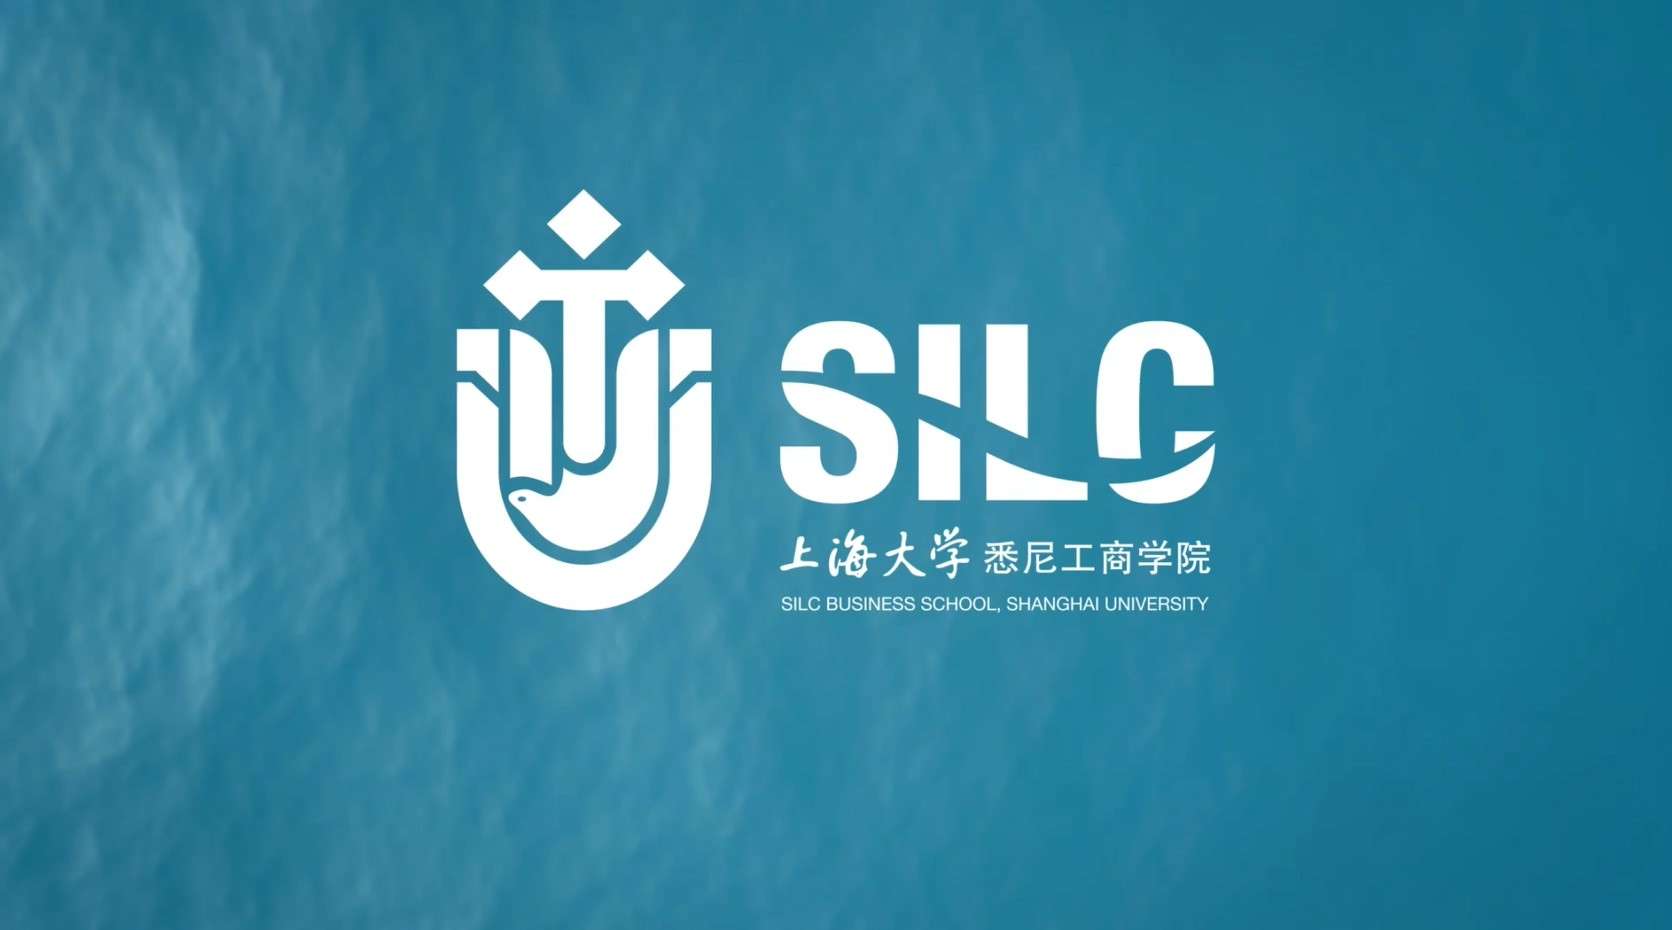 上海大学悉尼工商学院 25周年 宣传片